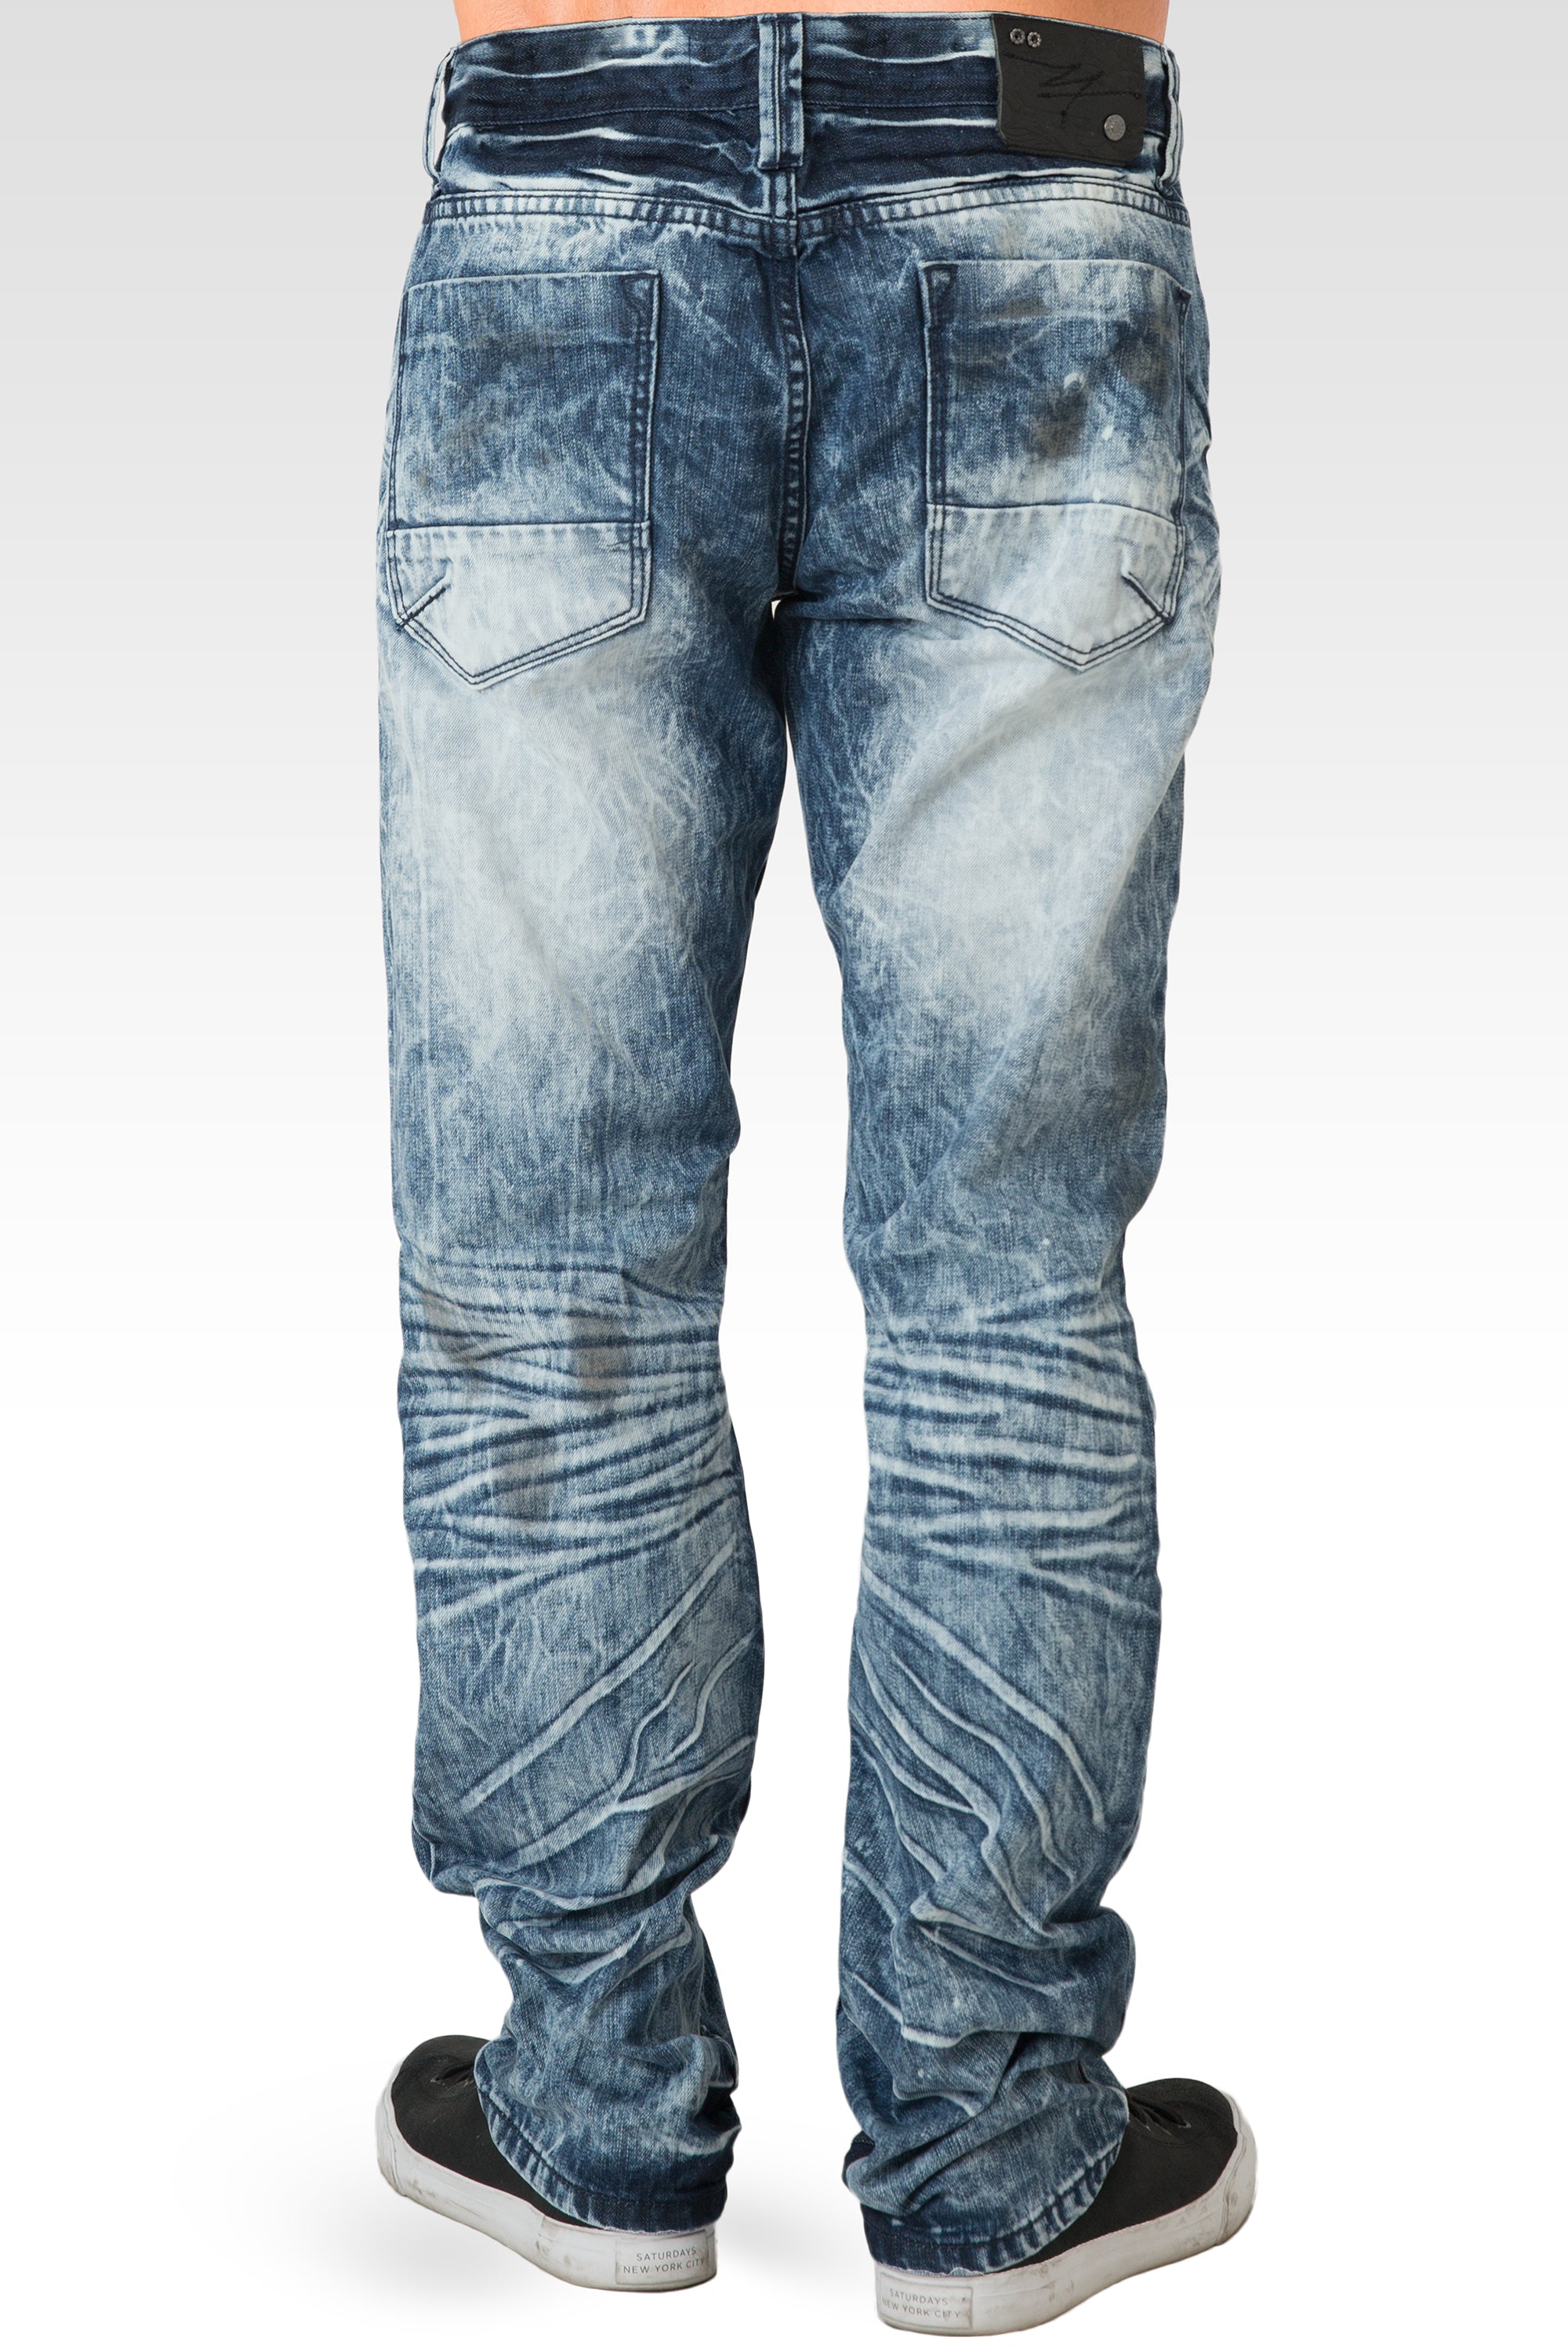 bundt Pudsigt Smadre Level 7 Mens Acid Washed Light Blue Oil Stain Premium Denim Jeans – Level 7  Jeans